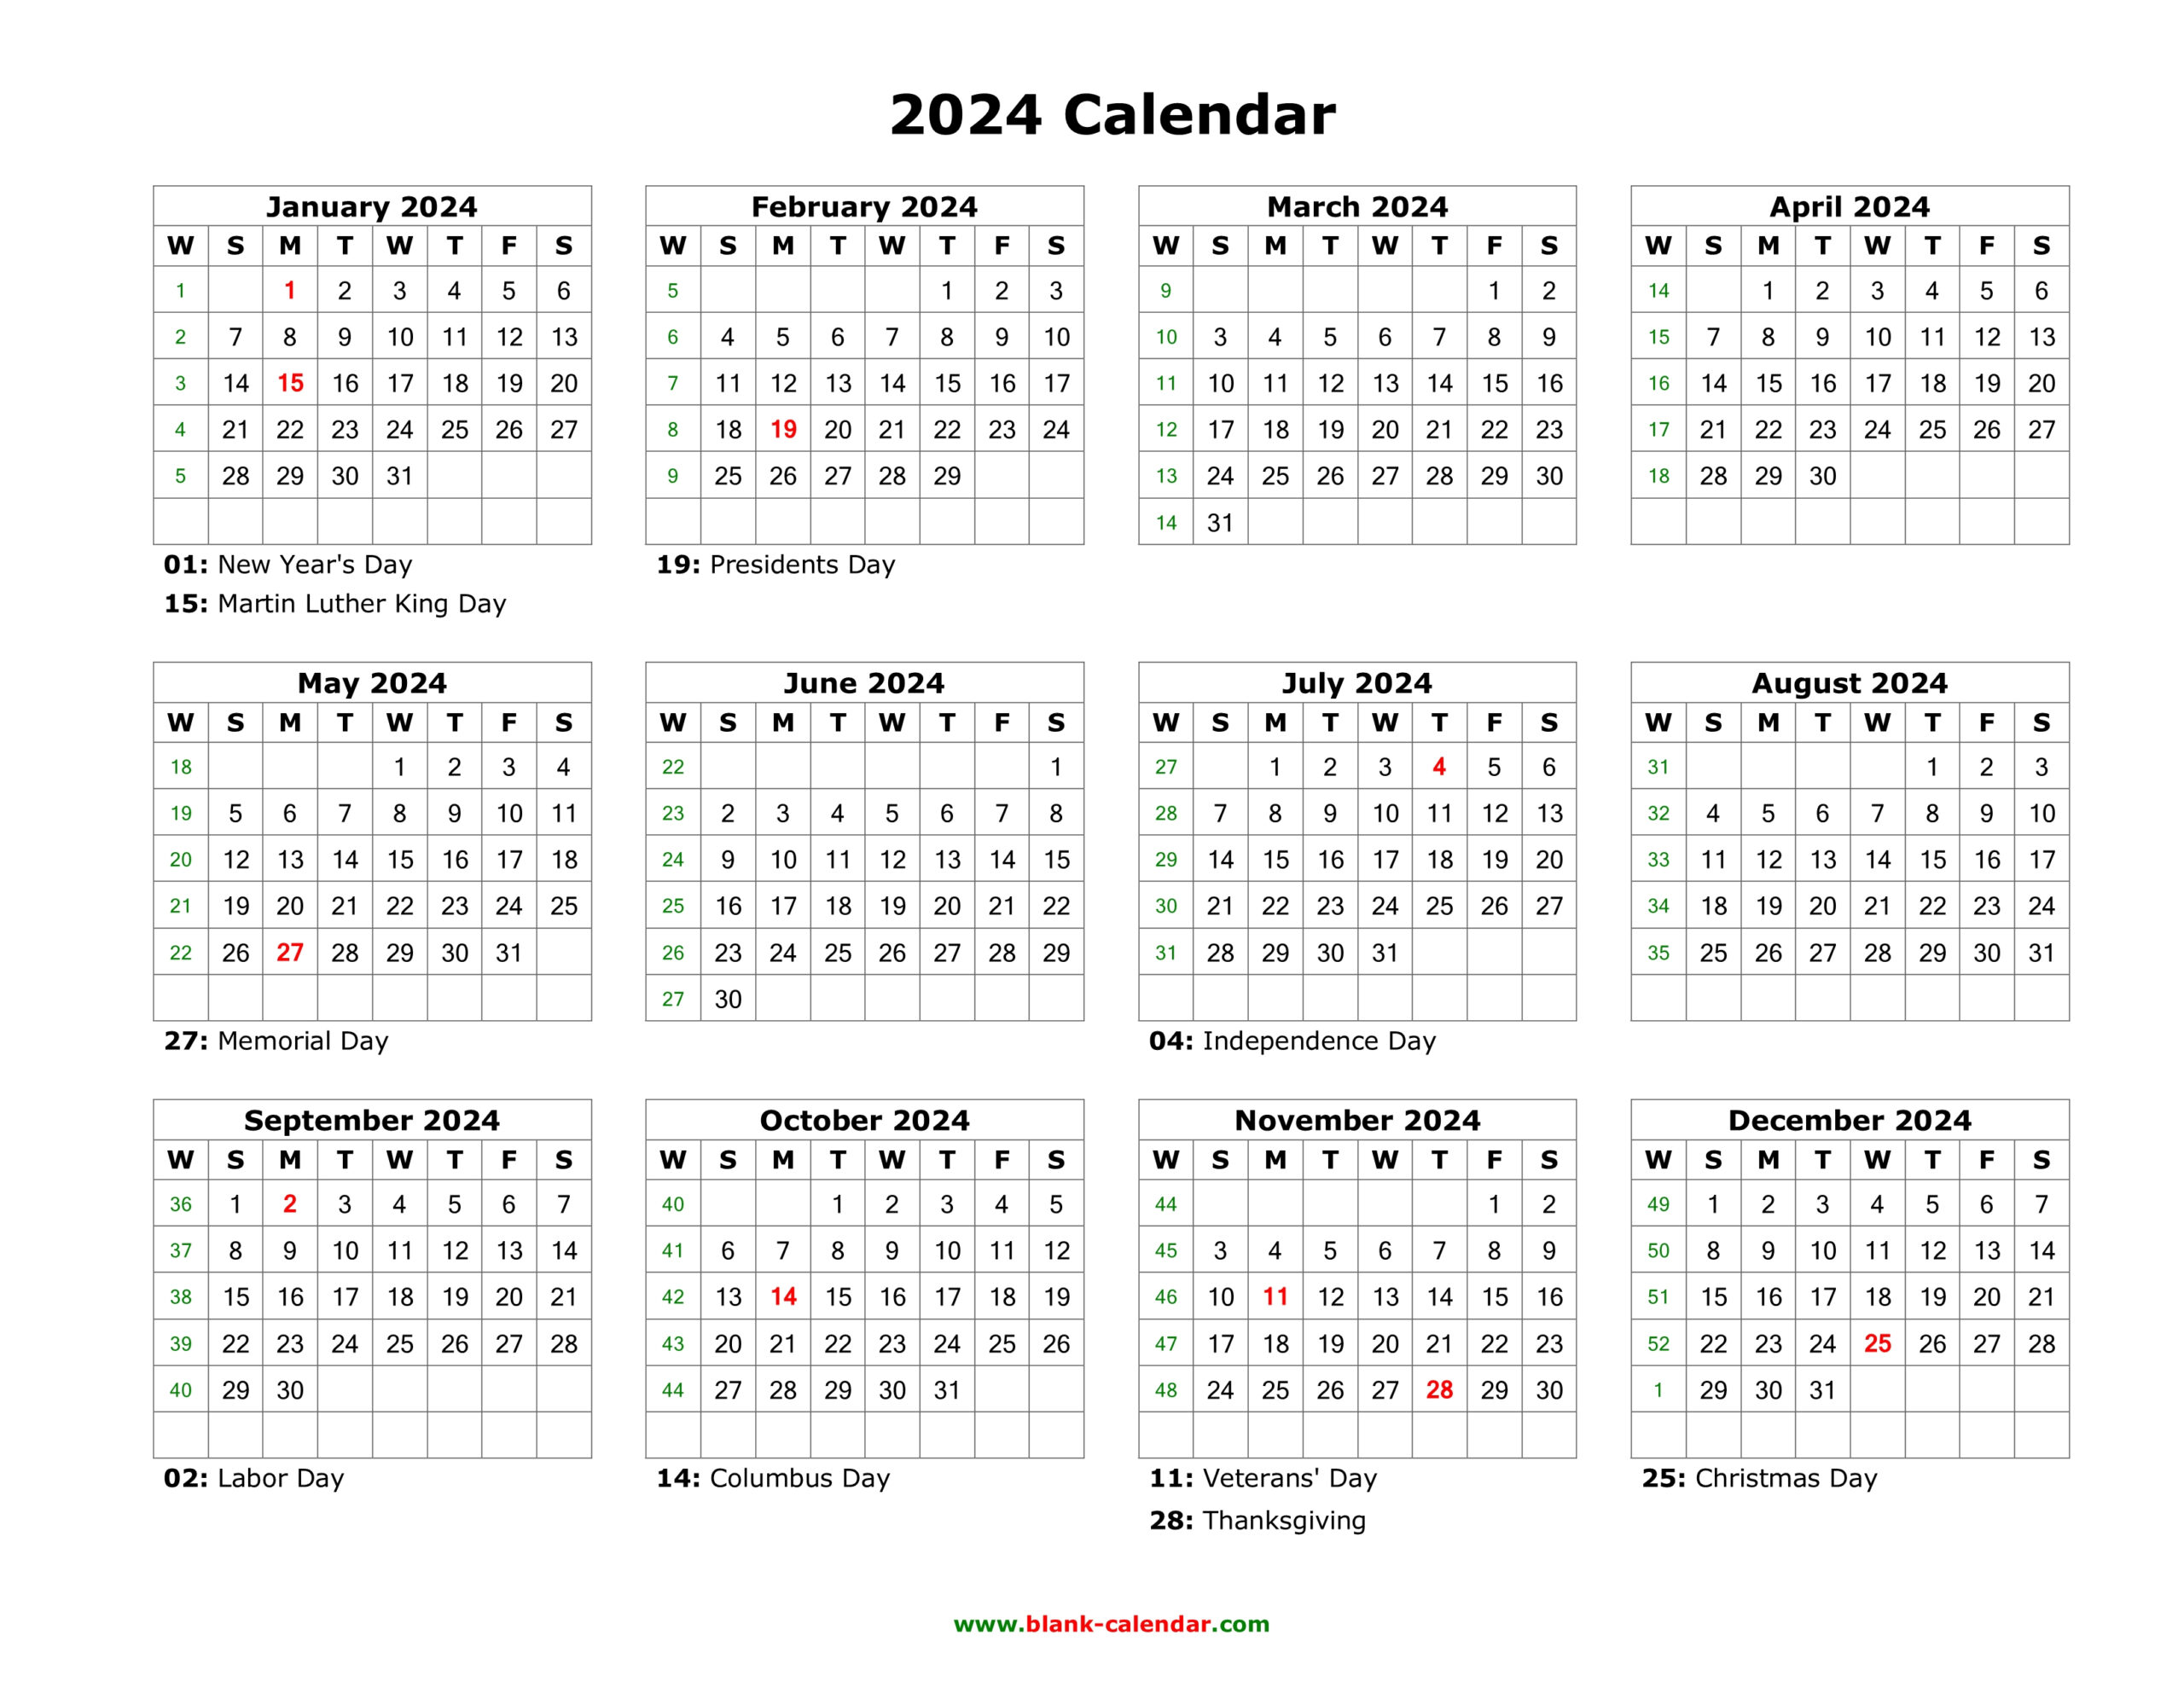 Blank Calendar 2024 | Free Download Calendar Templates for Printable Calendar Templates 2024